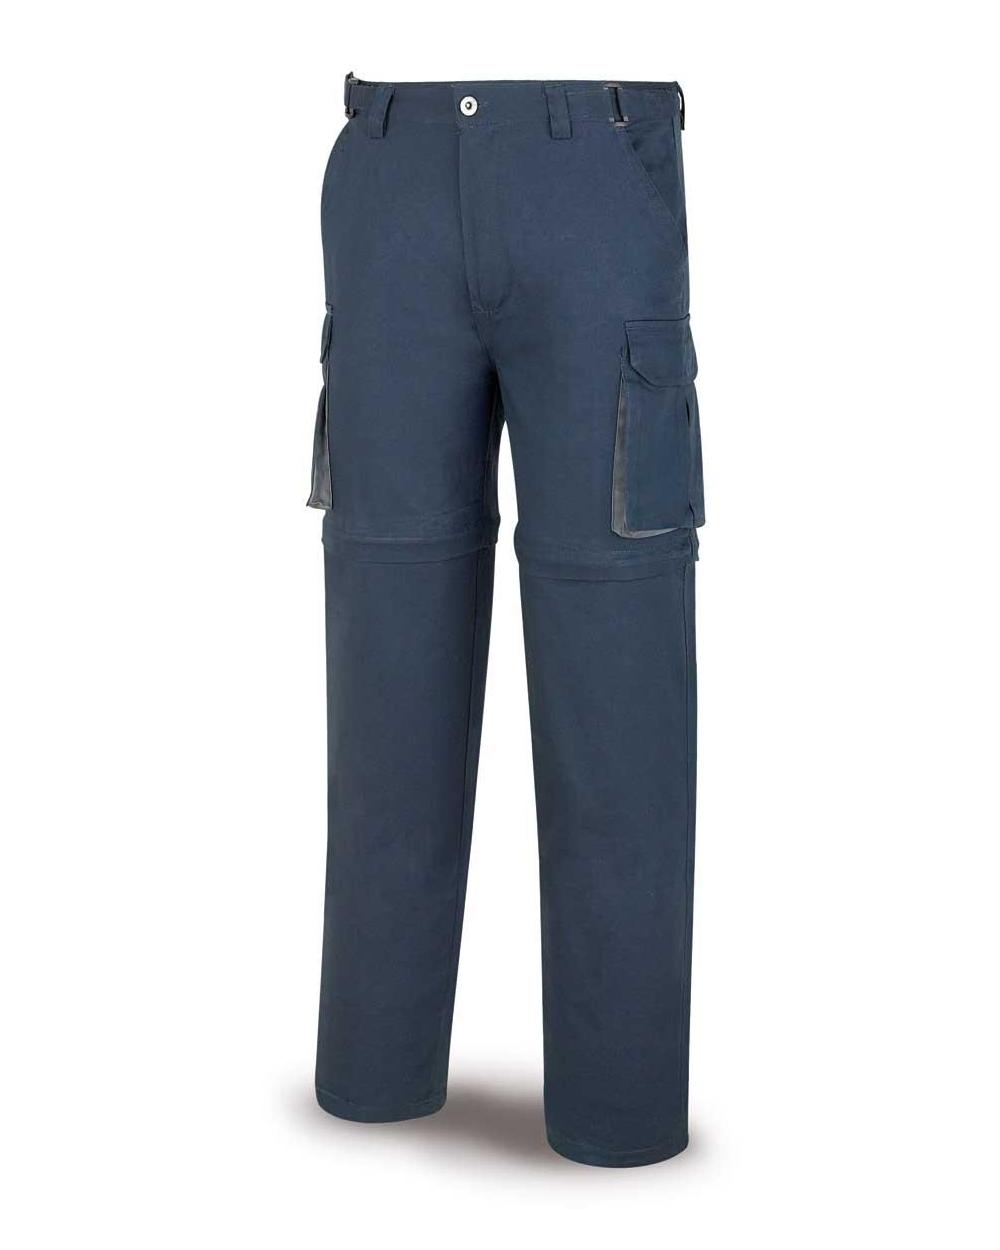 Comprar Pantalón Desmontable Azul 588-Pda